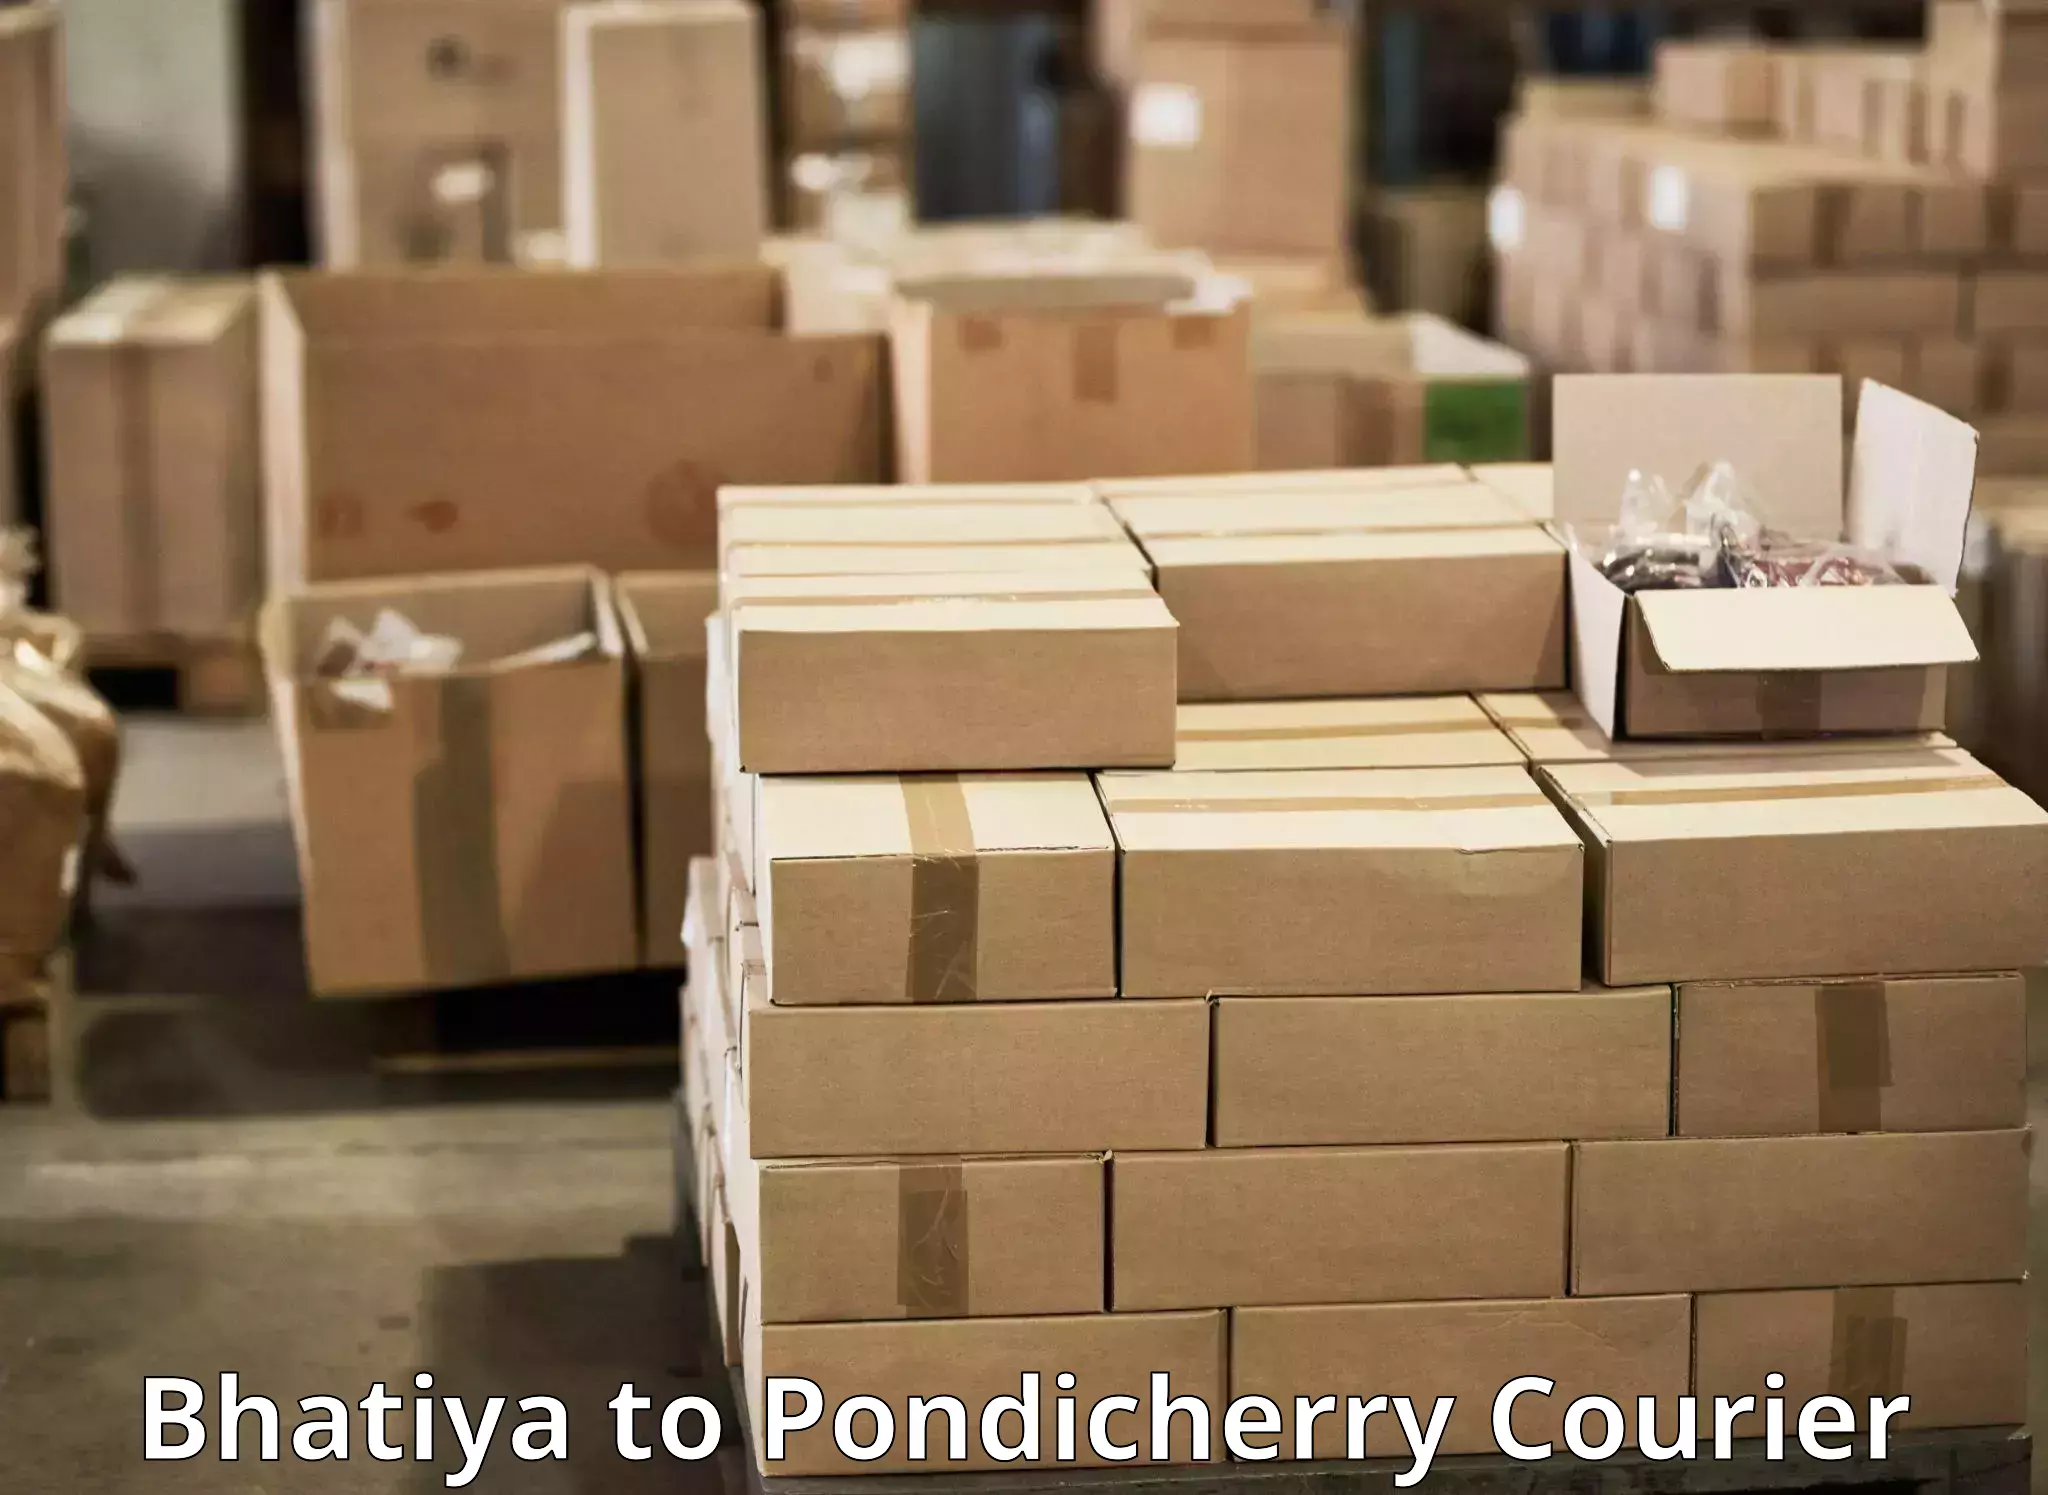 Tech-enabled shipping Bhatiya to Pondicherry University